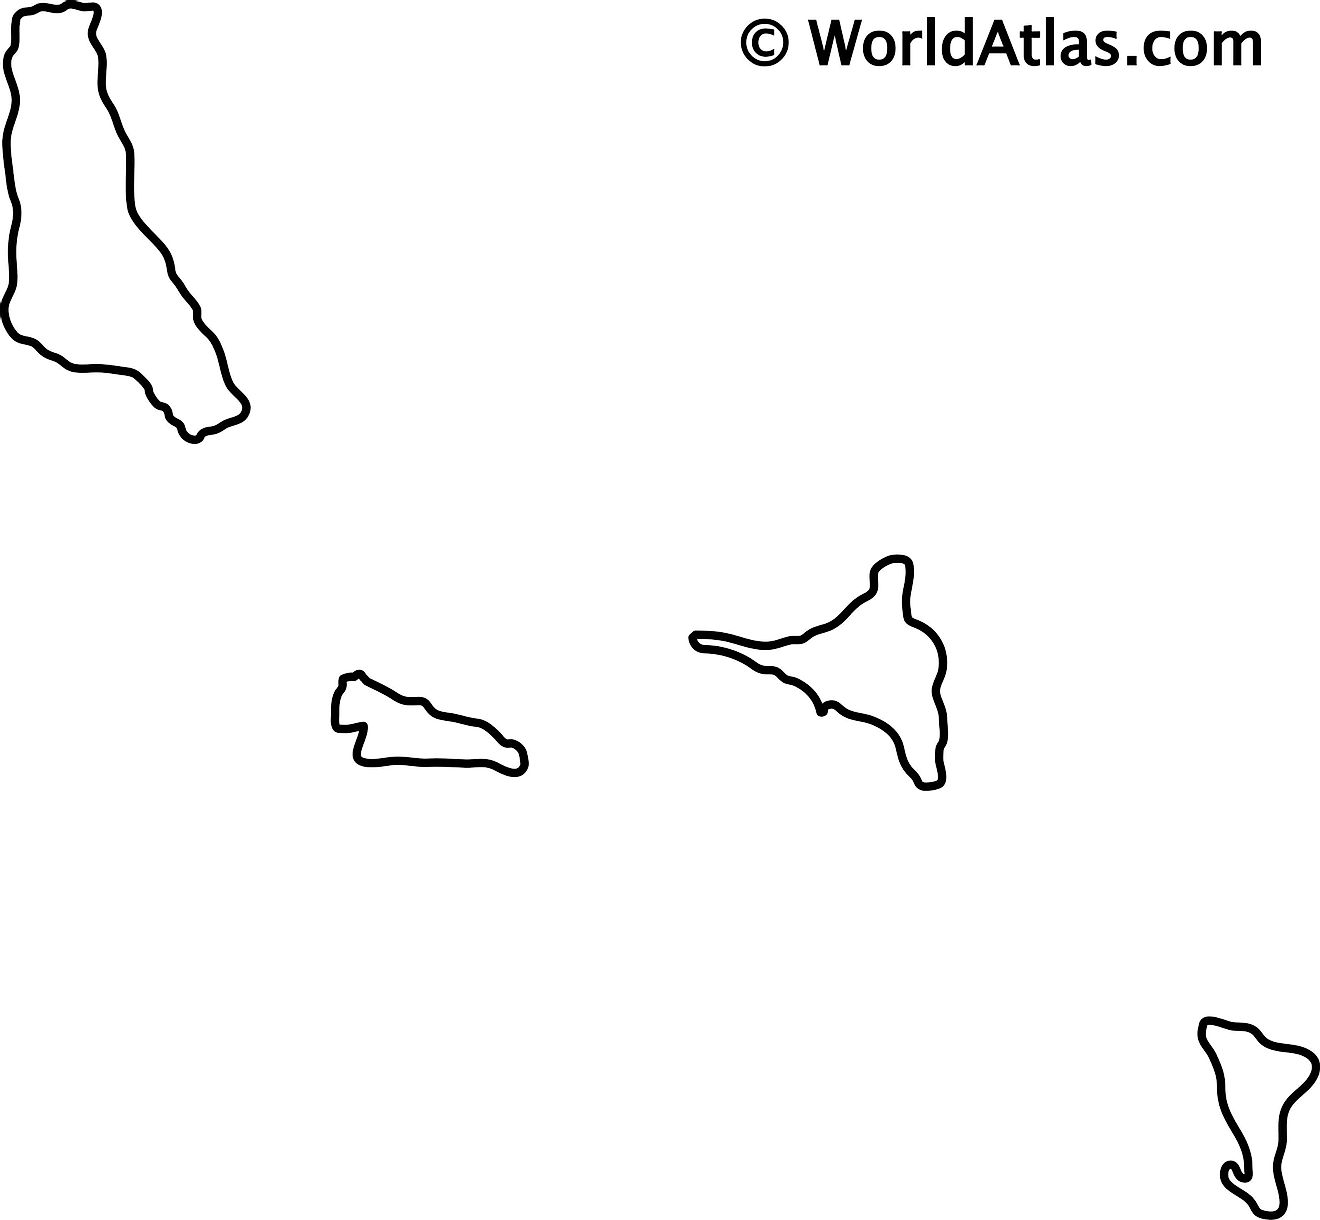 Mapa de contorno en blanco de las Comoras